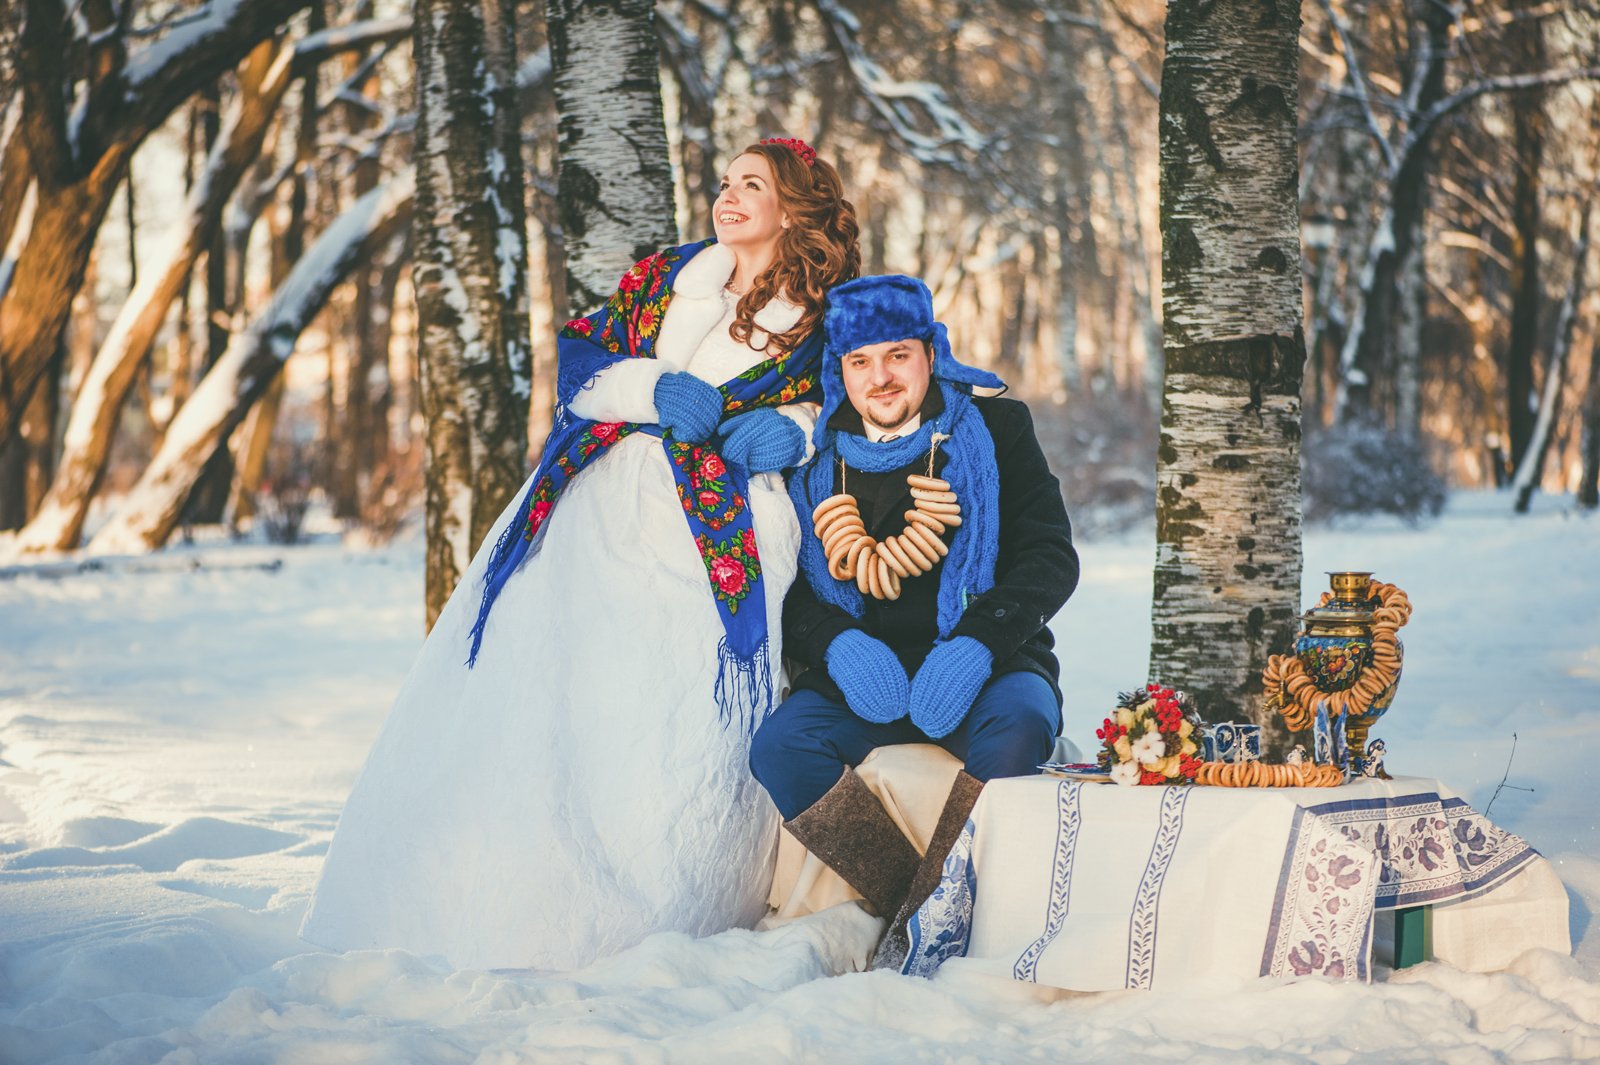 53 актуальные фото идеи для свадебной фотосессии зимой